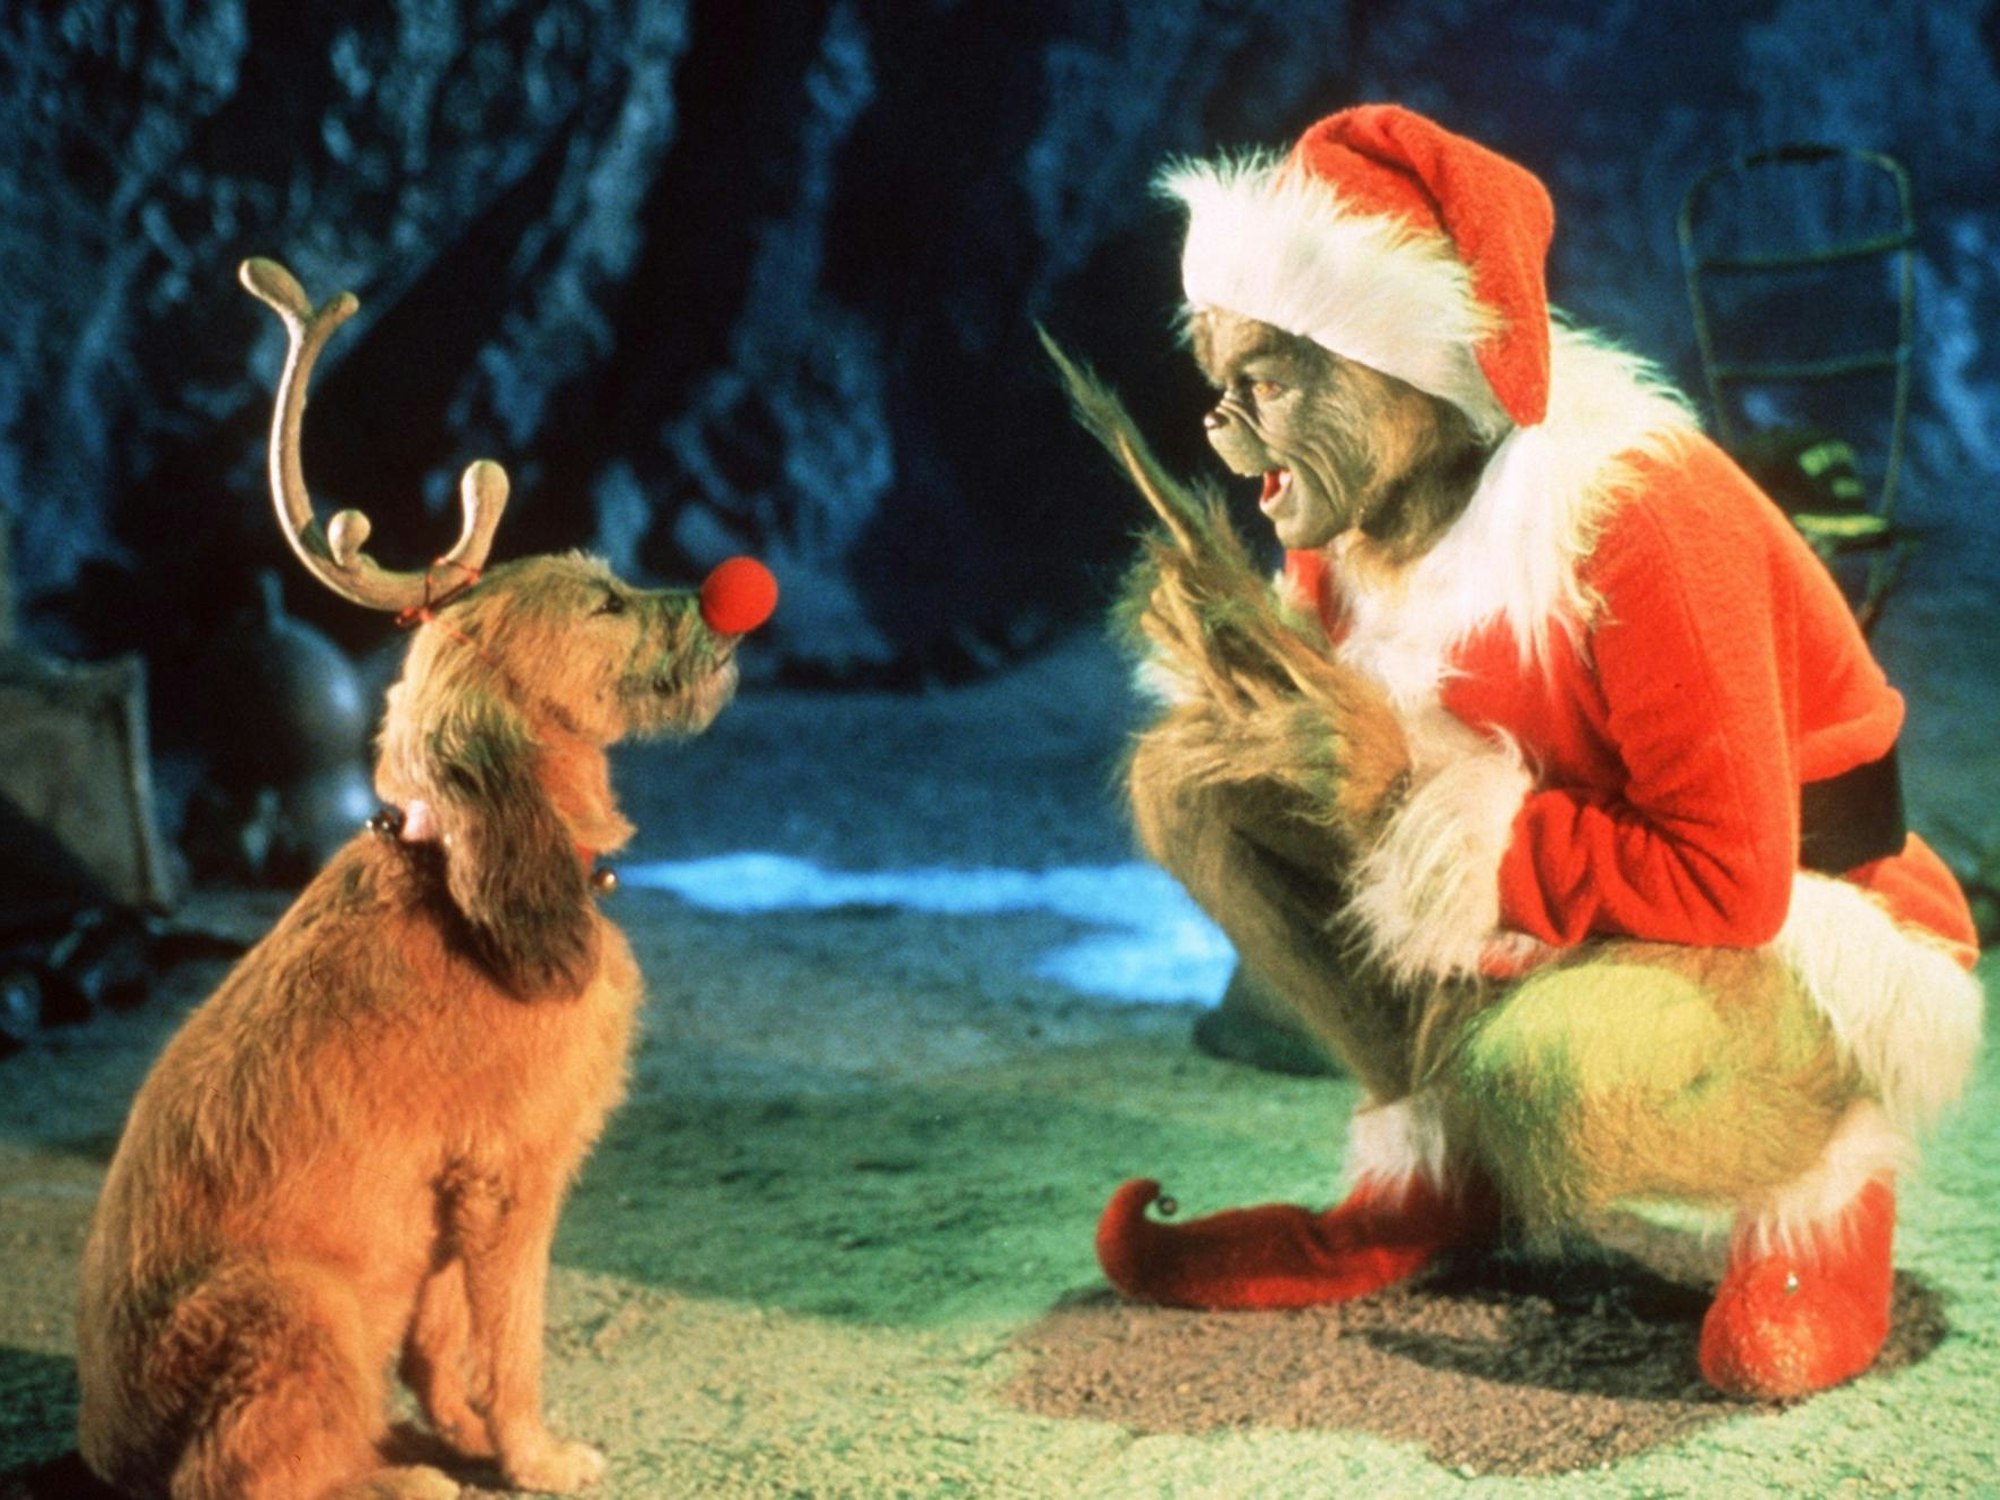 Der Grinch möchte allen Menschen das Weihnachtsfest verderben.